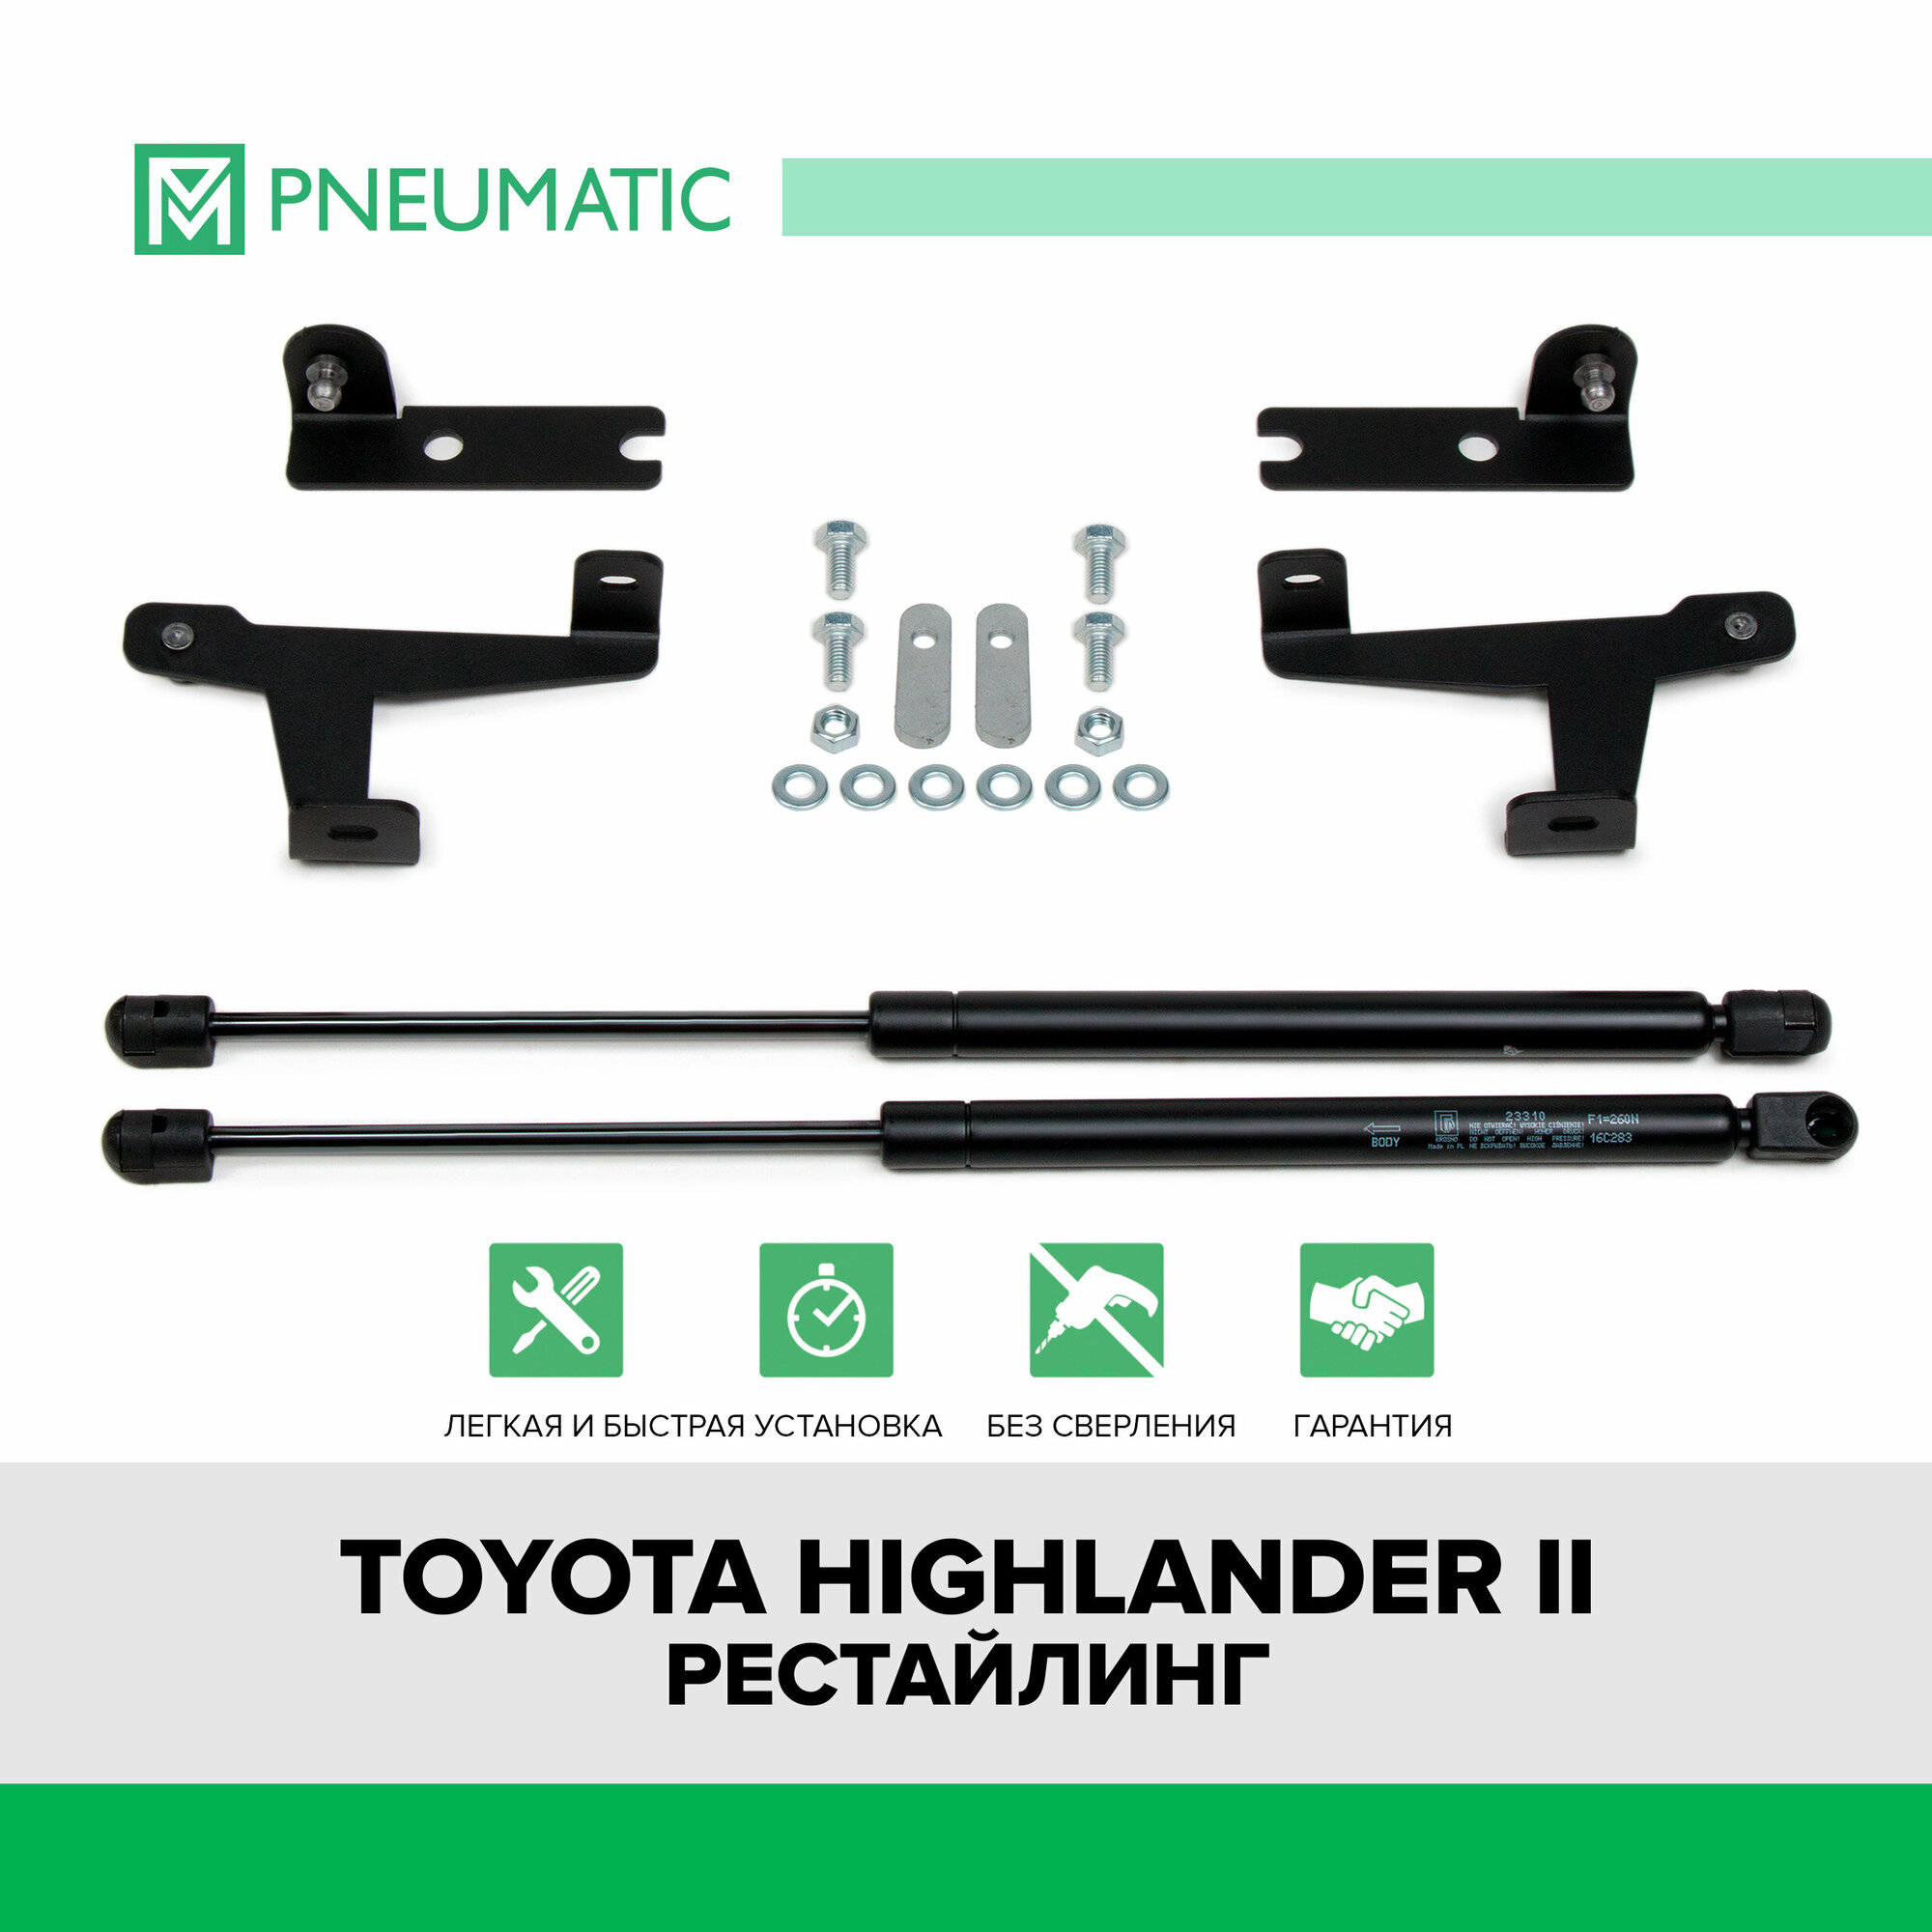 Газовые упоры капота Pneumatic для Toyota Highlander U40 рестайлинг 2010-2013, 2 шт, KU-TY-HL00-00